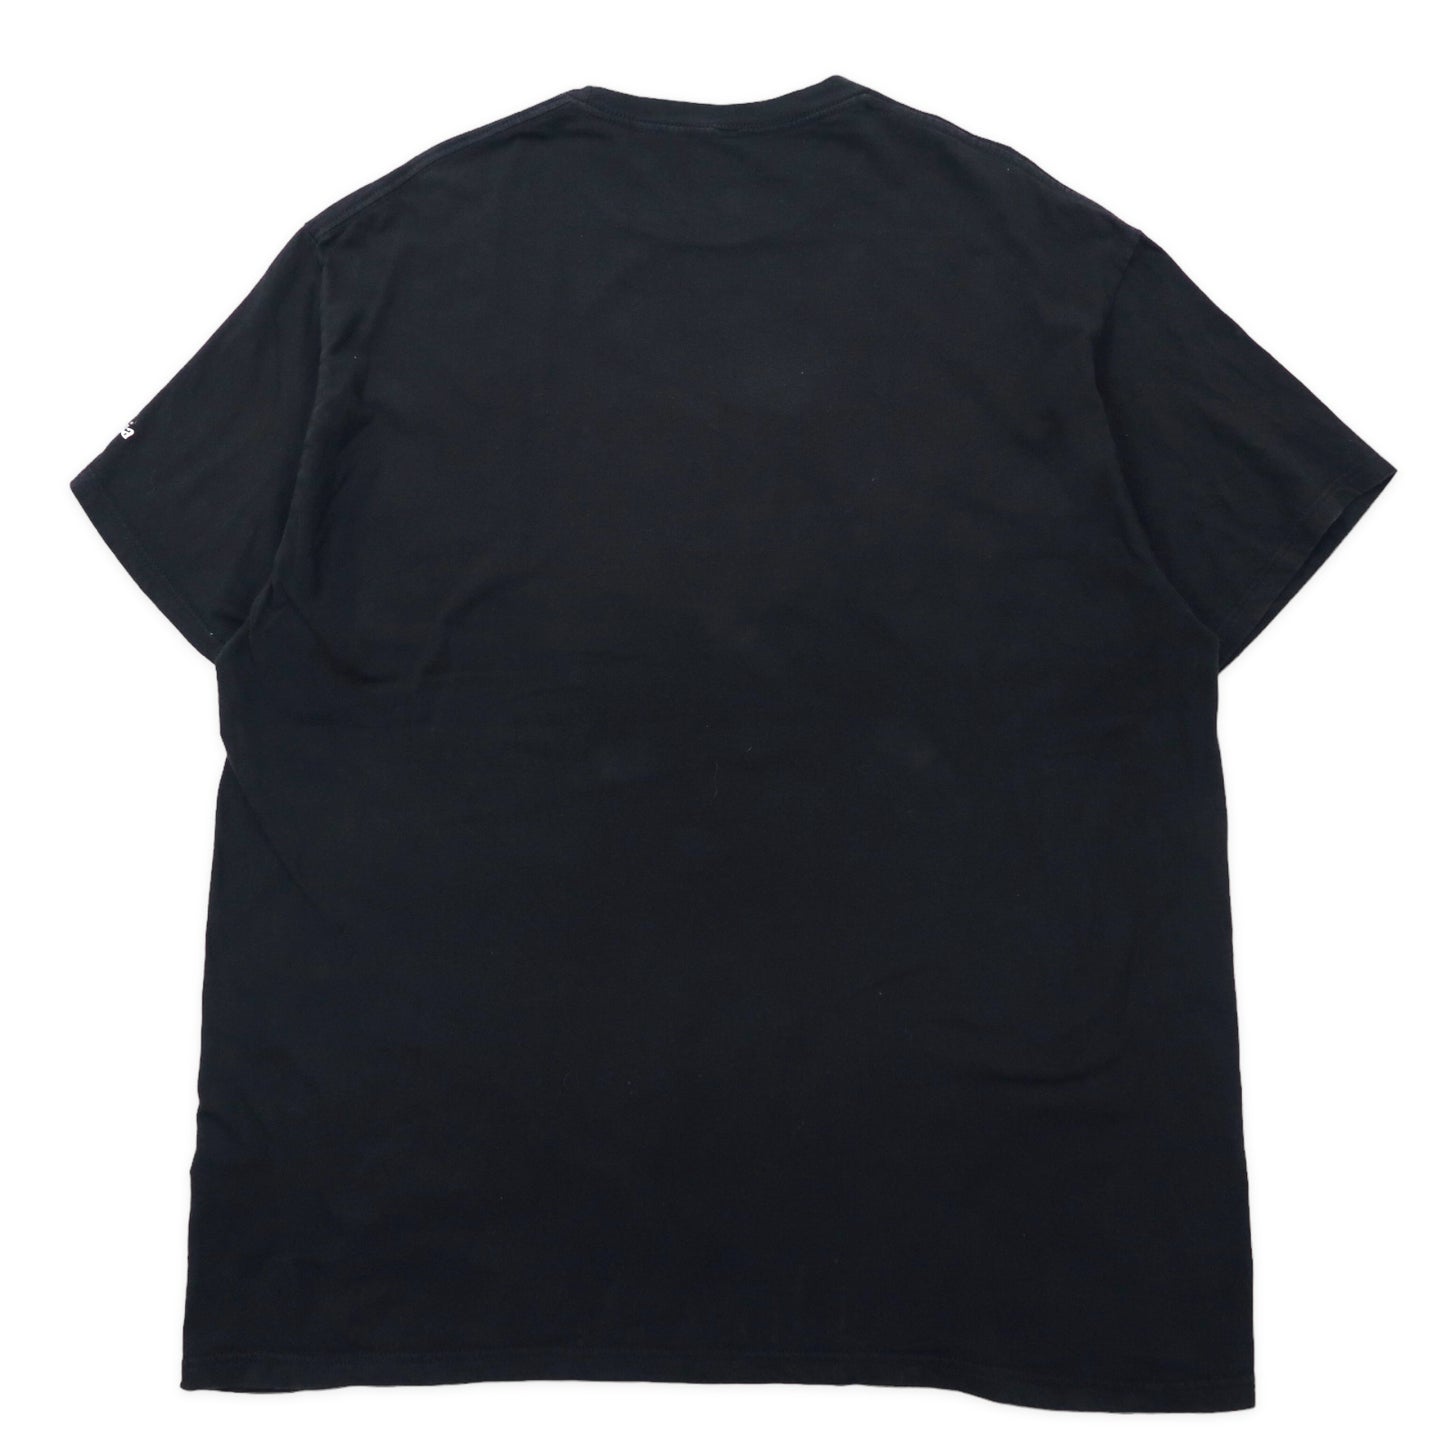 Columbia プリントTシャツ XXL ブラック コットン GRAND CANYON ビッグサイズ メキシコ製